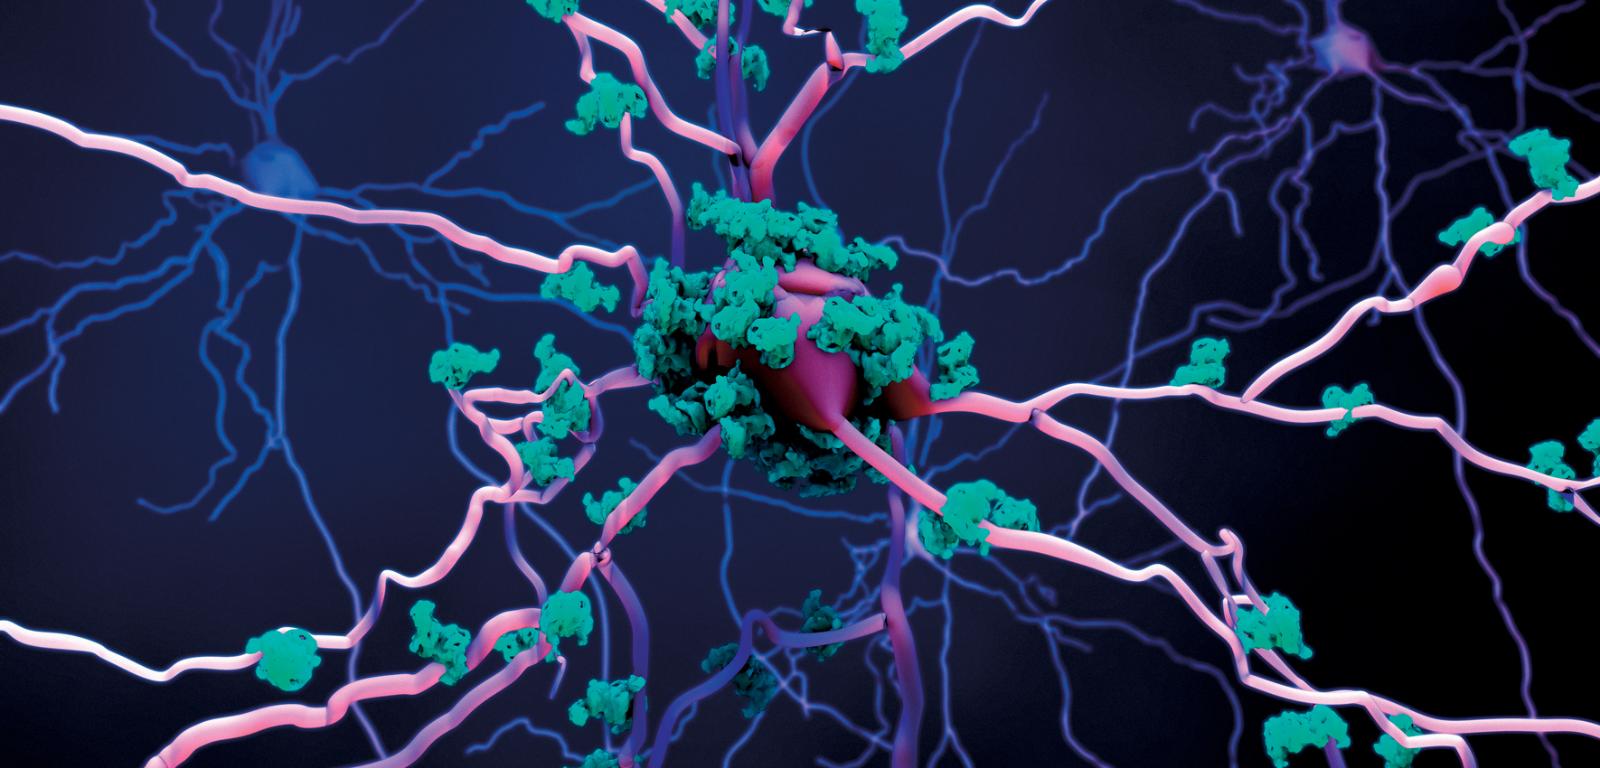 Wizualizacja 3D: zmiany funkcjonalne w mózgu (różowe neurony) niekoniecznie pojawiają się tam, gdzie wykrywany jest pierwotnie beta-amyloid (seledynowe złogi).